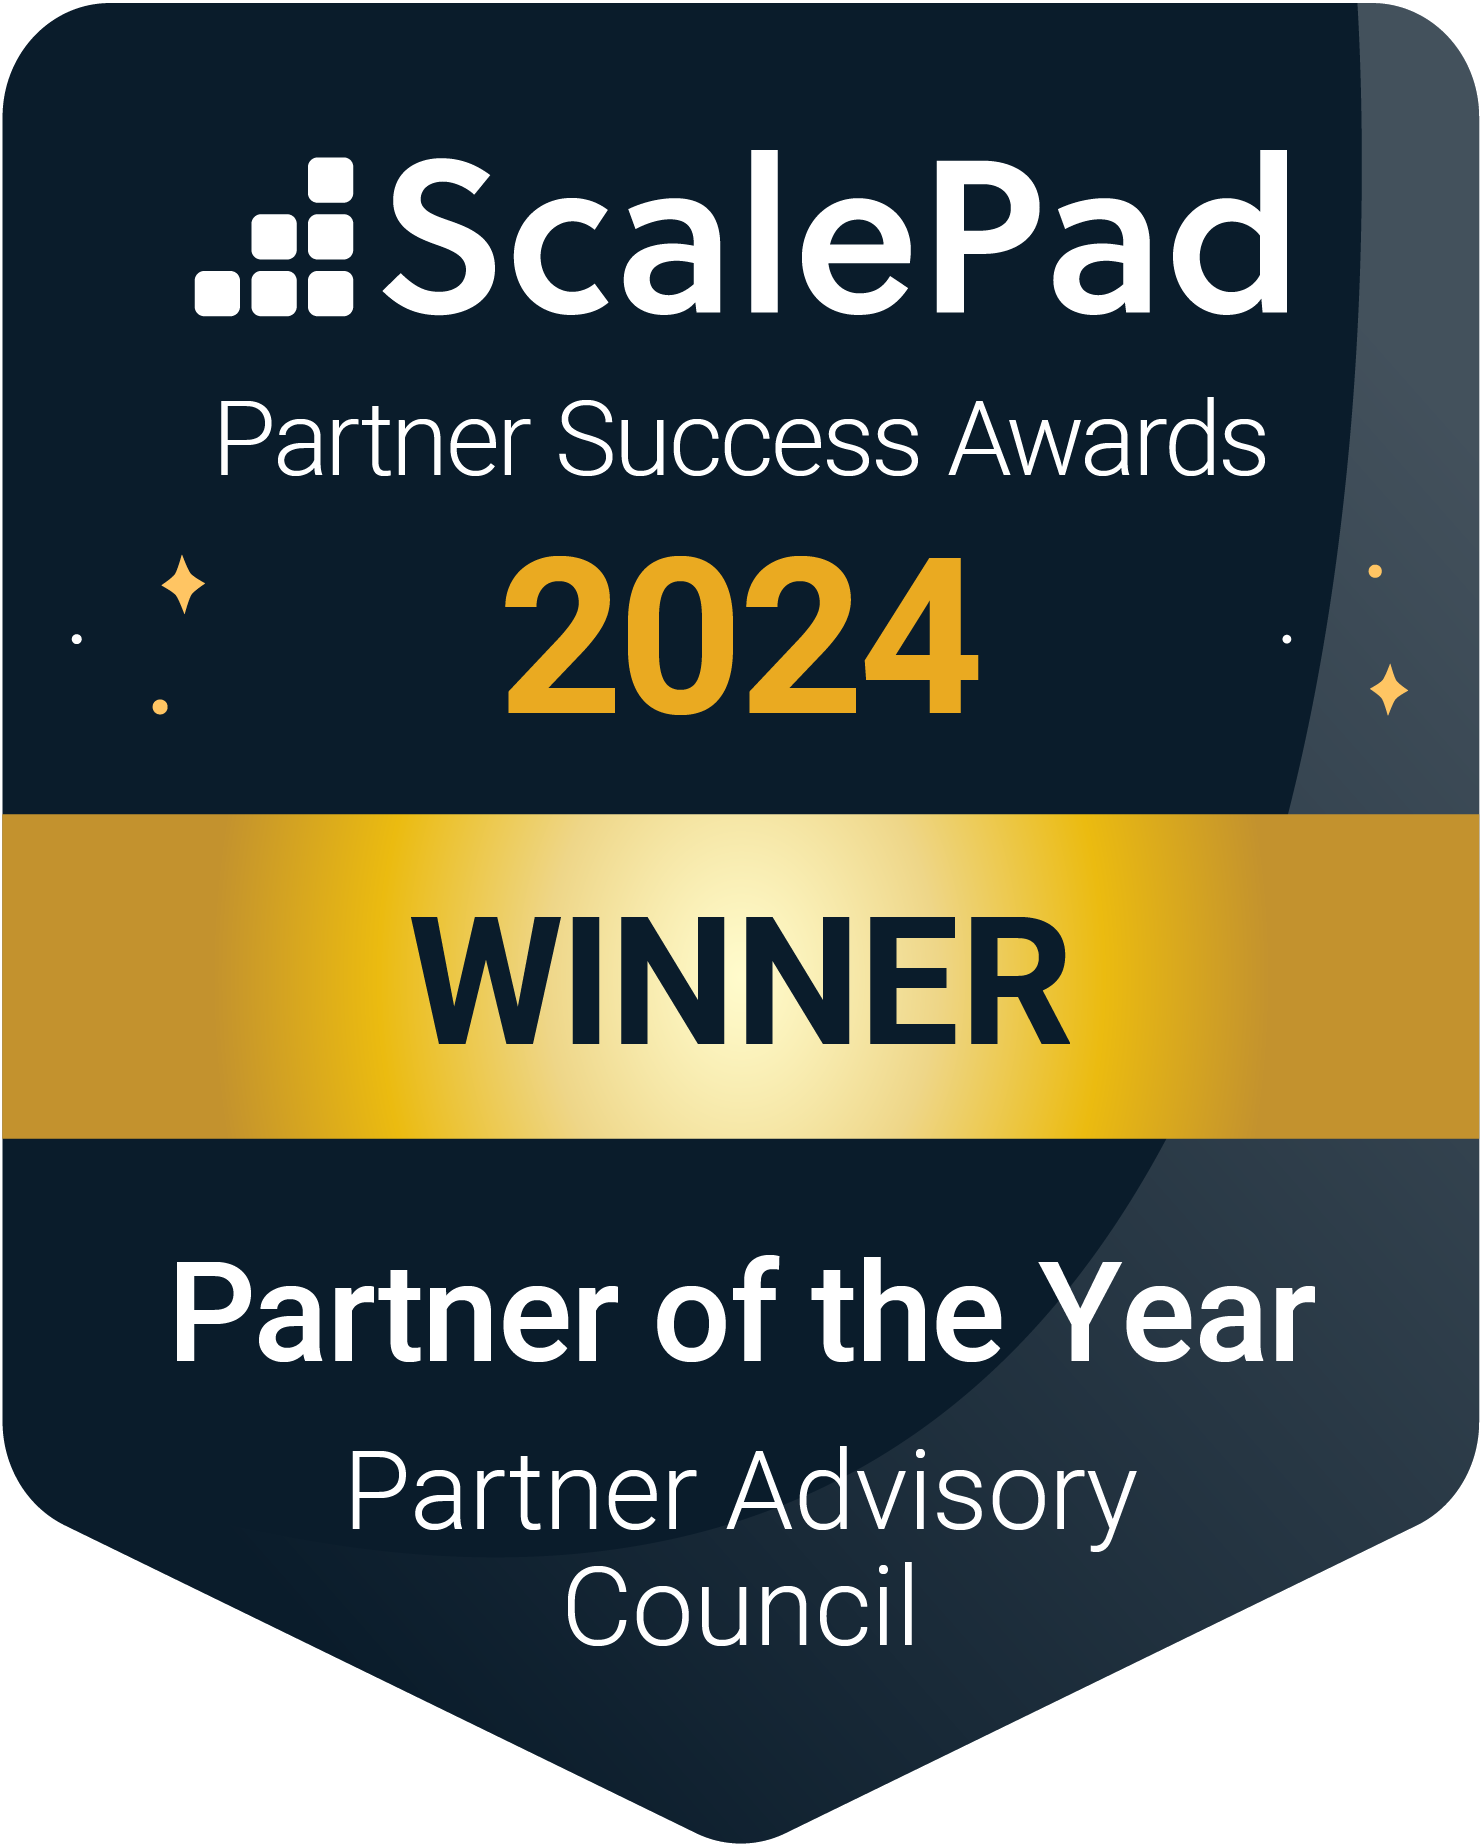 Ekaru Awarded ScalePad Partner Advisory Council Partner of the Year